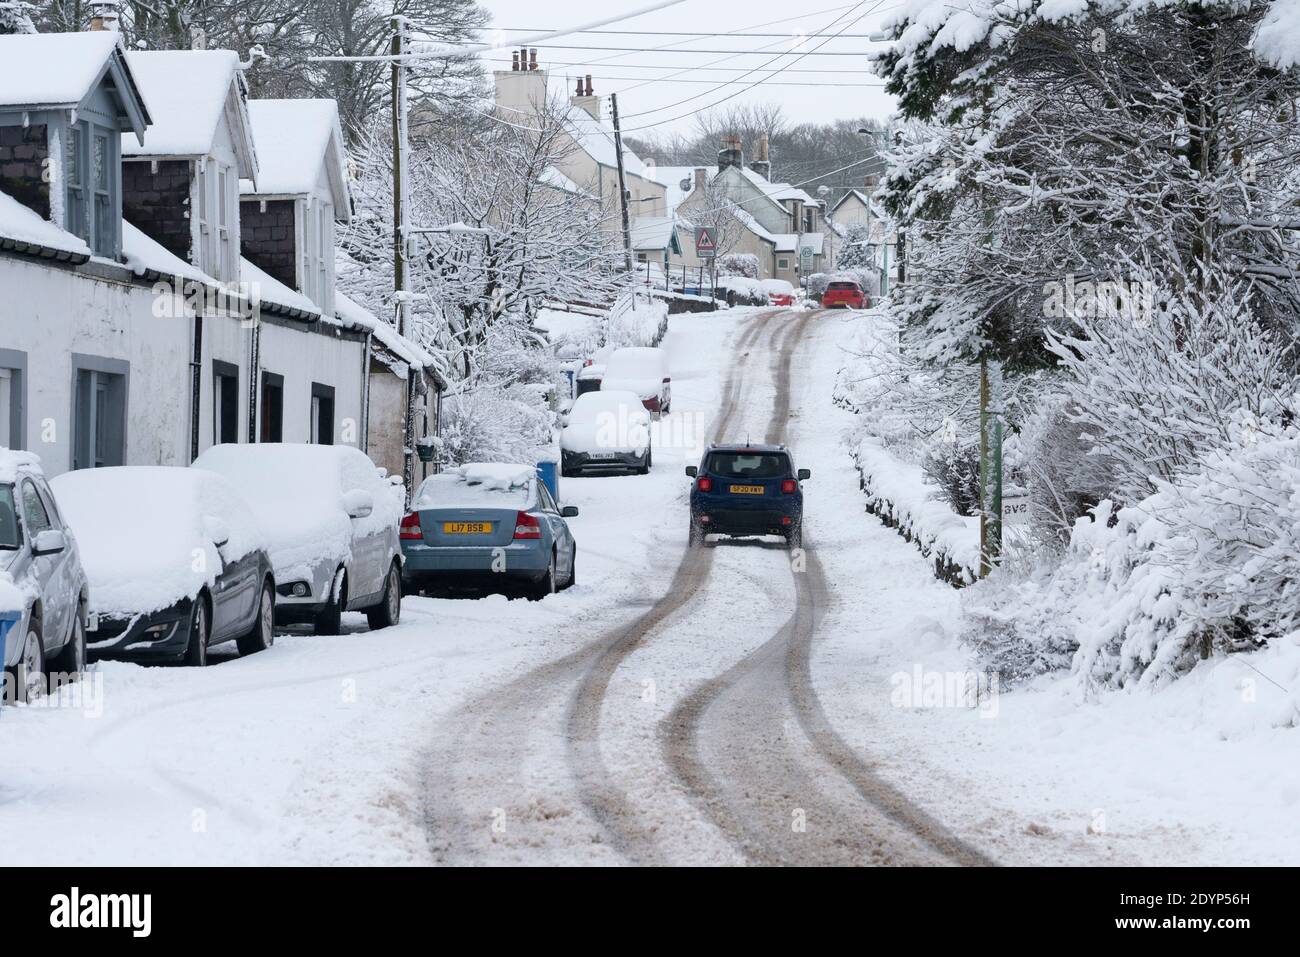 Leadhills, Escocia, Reino Unido. 27 de diciembre de 2020. En Leadhills, el segundo pueblo más alto de Escocia, en el sur de Lanarkshire, cae una gran cantidad de nieve. Iain Masterton/Alamy Live News Foto de stock